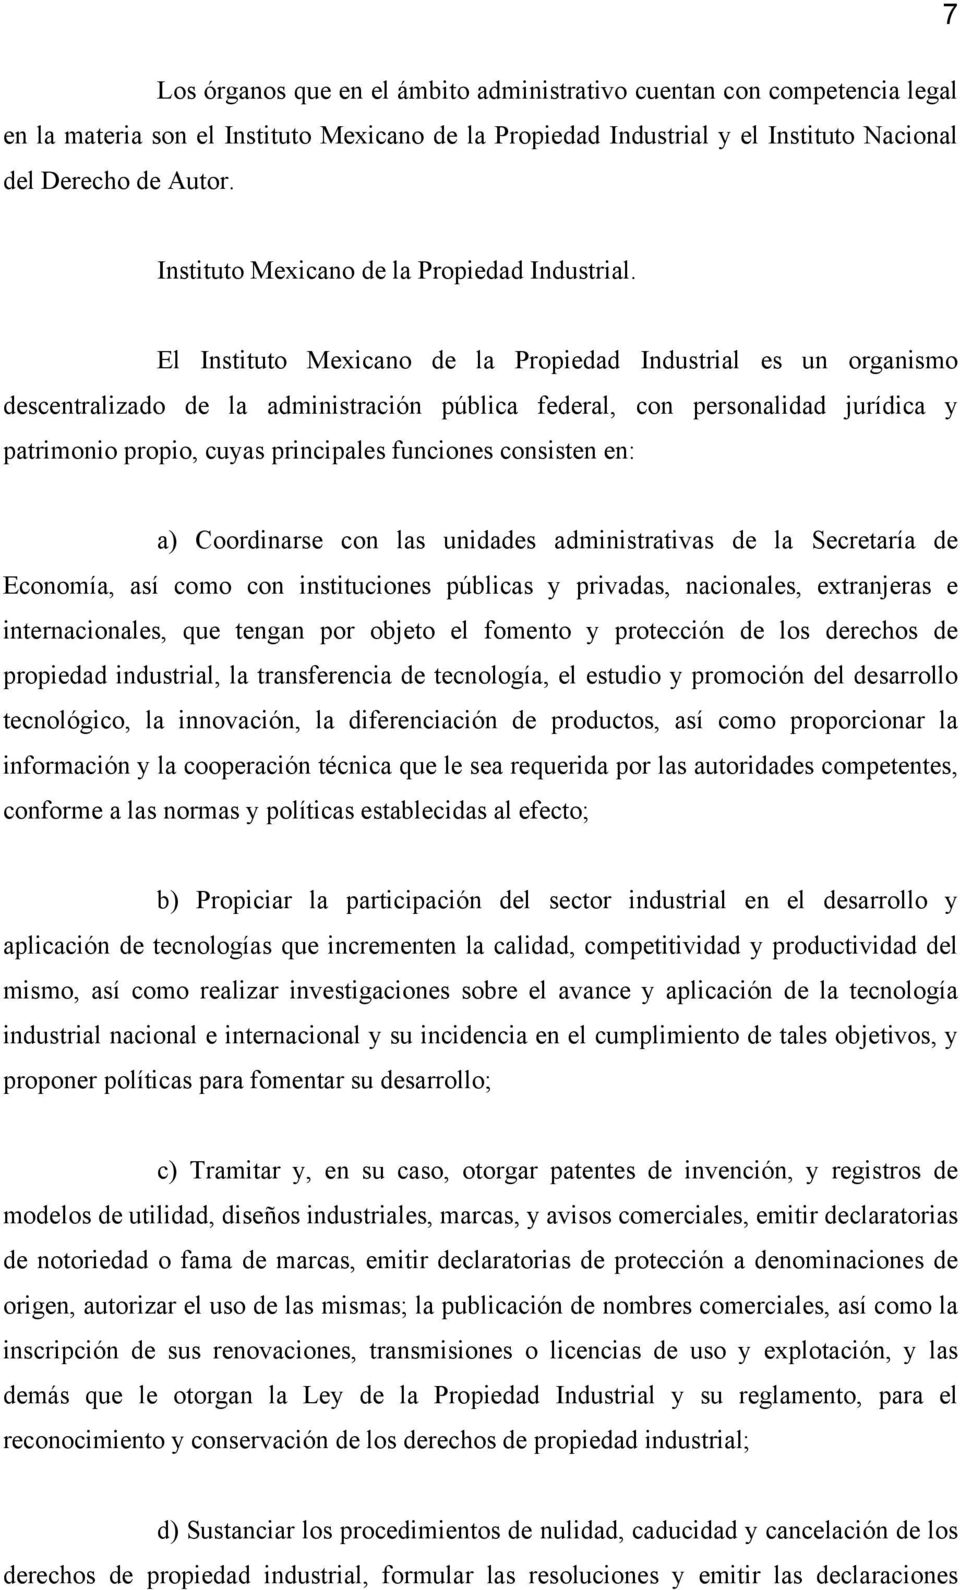 El Instituto Mexicano de la Propiedad Industrial es un organismo descentralizado de la administración pública federal, con personalidad jurídica y patrimonio propio, cuyas principales funciones